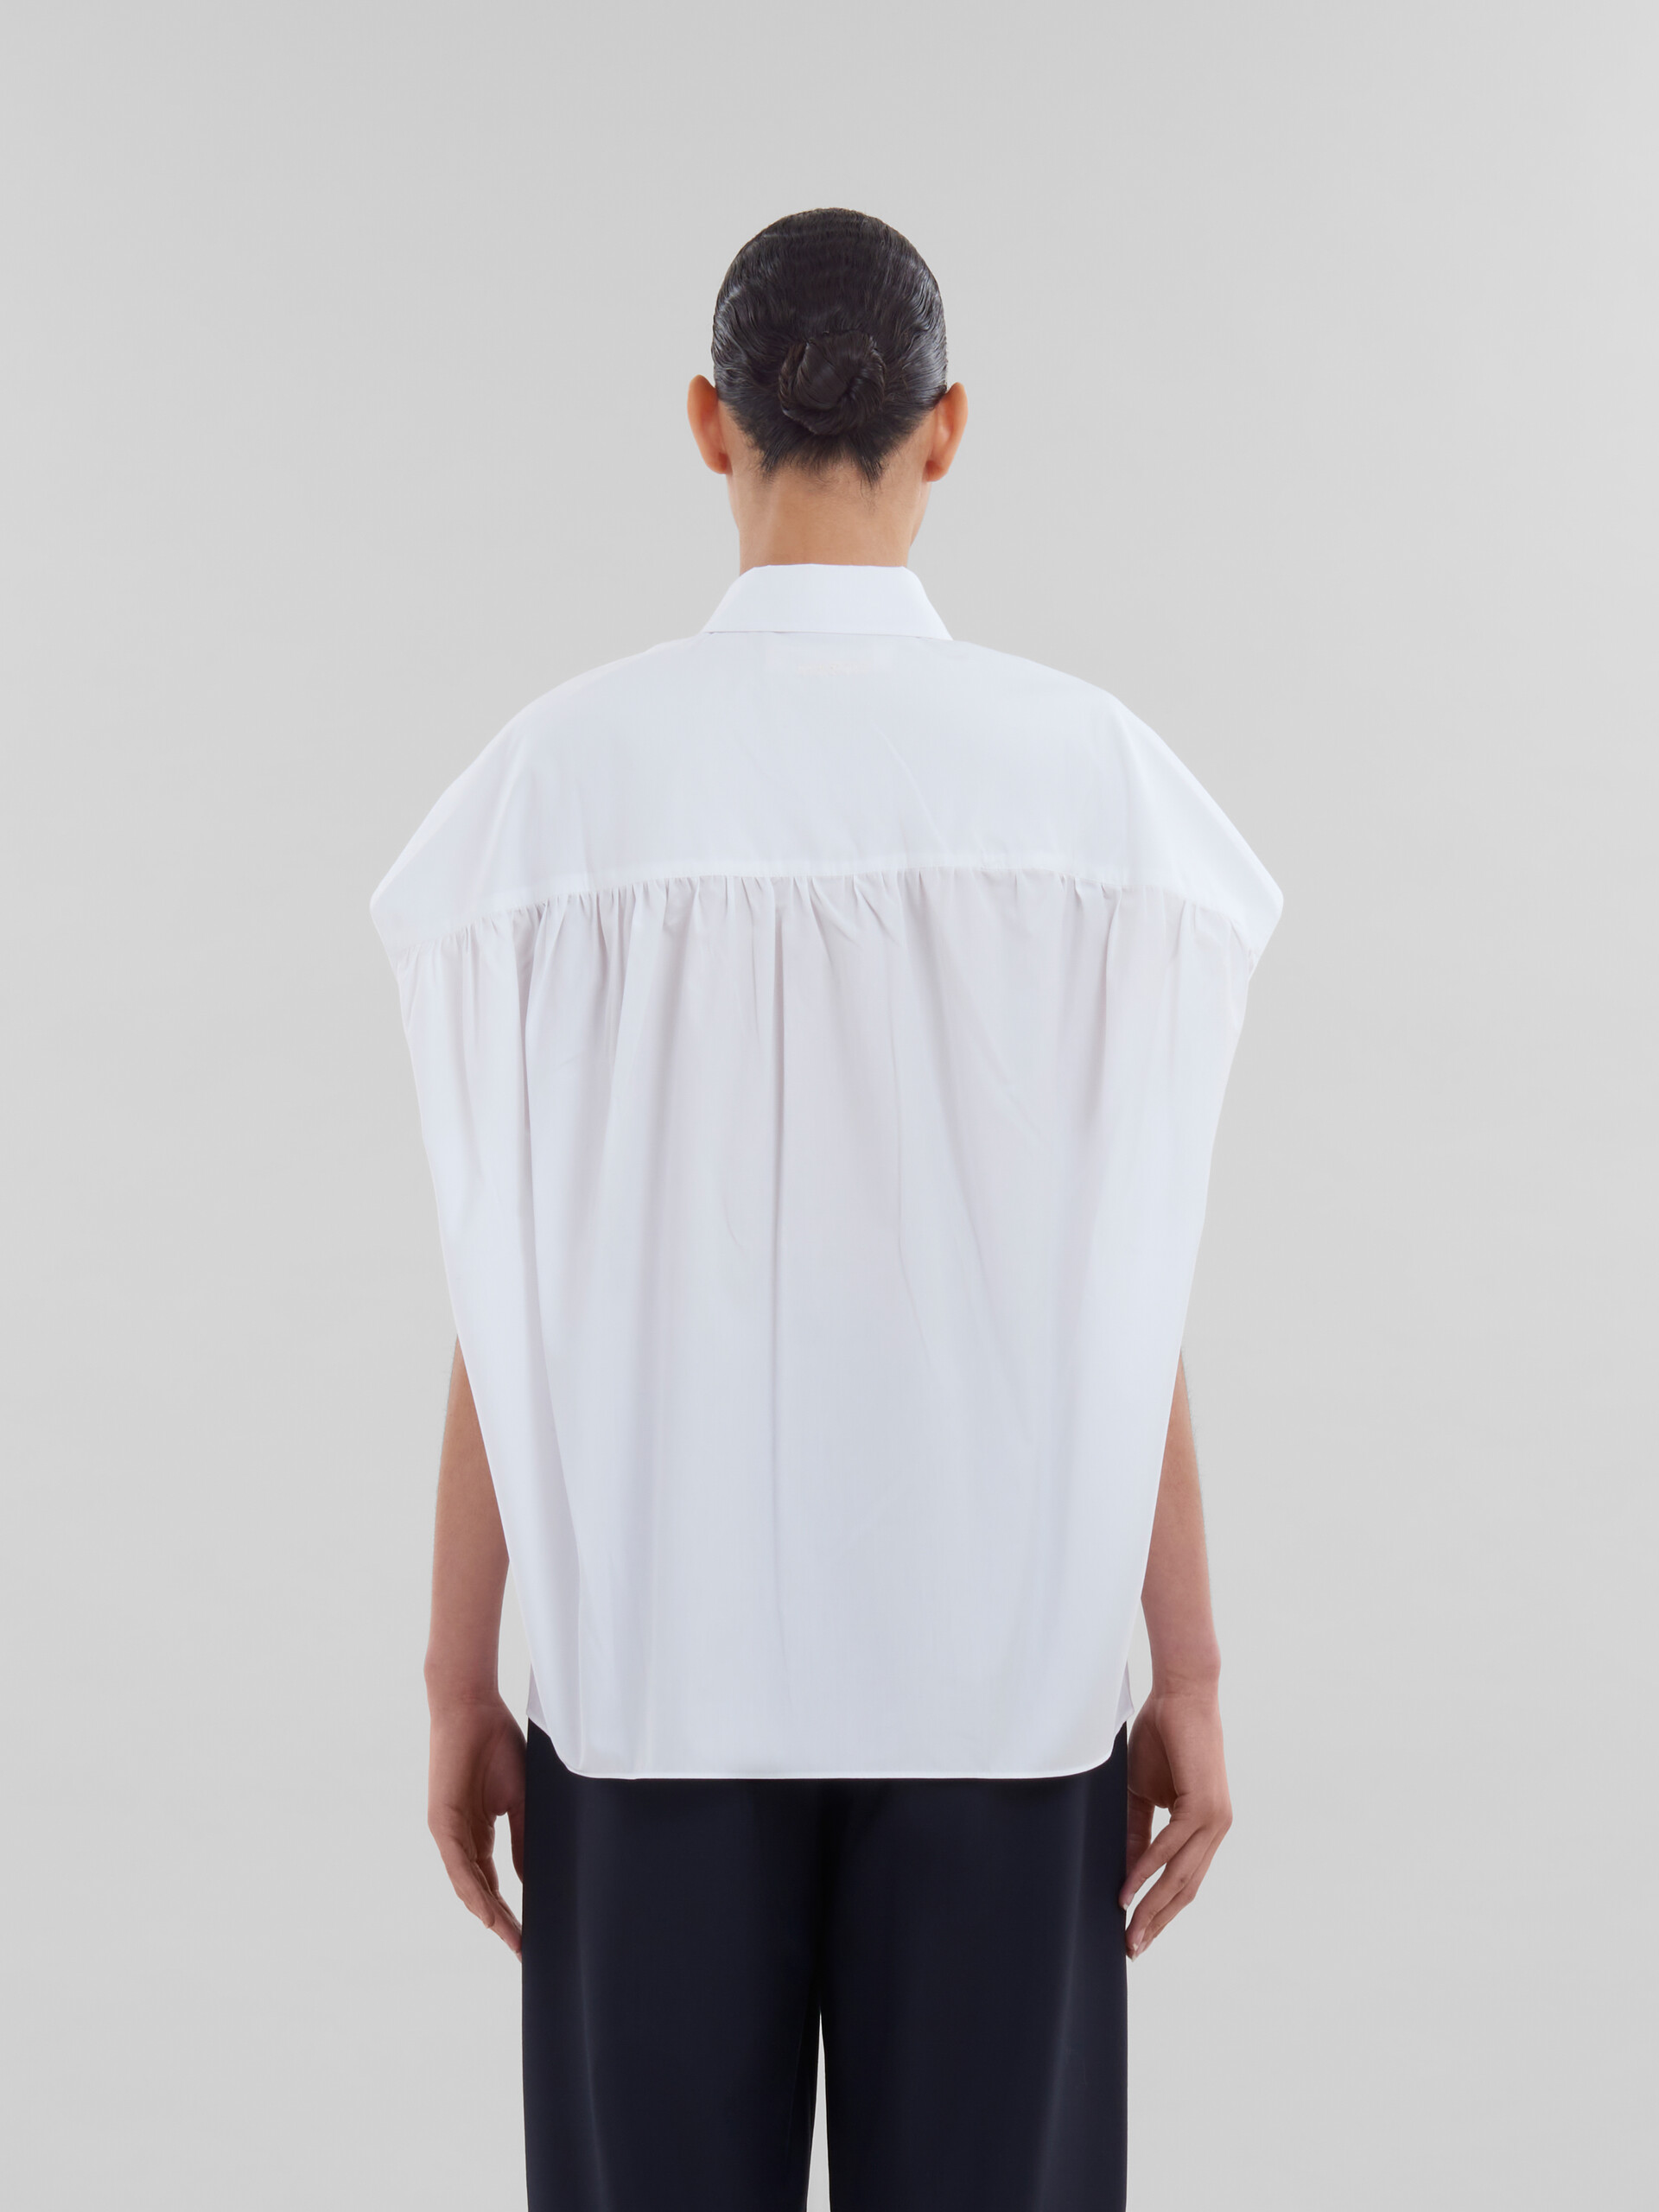 Camisa de popelina blanca cocoon - Camisas - Image 3